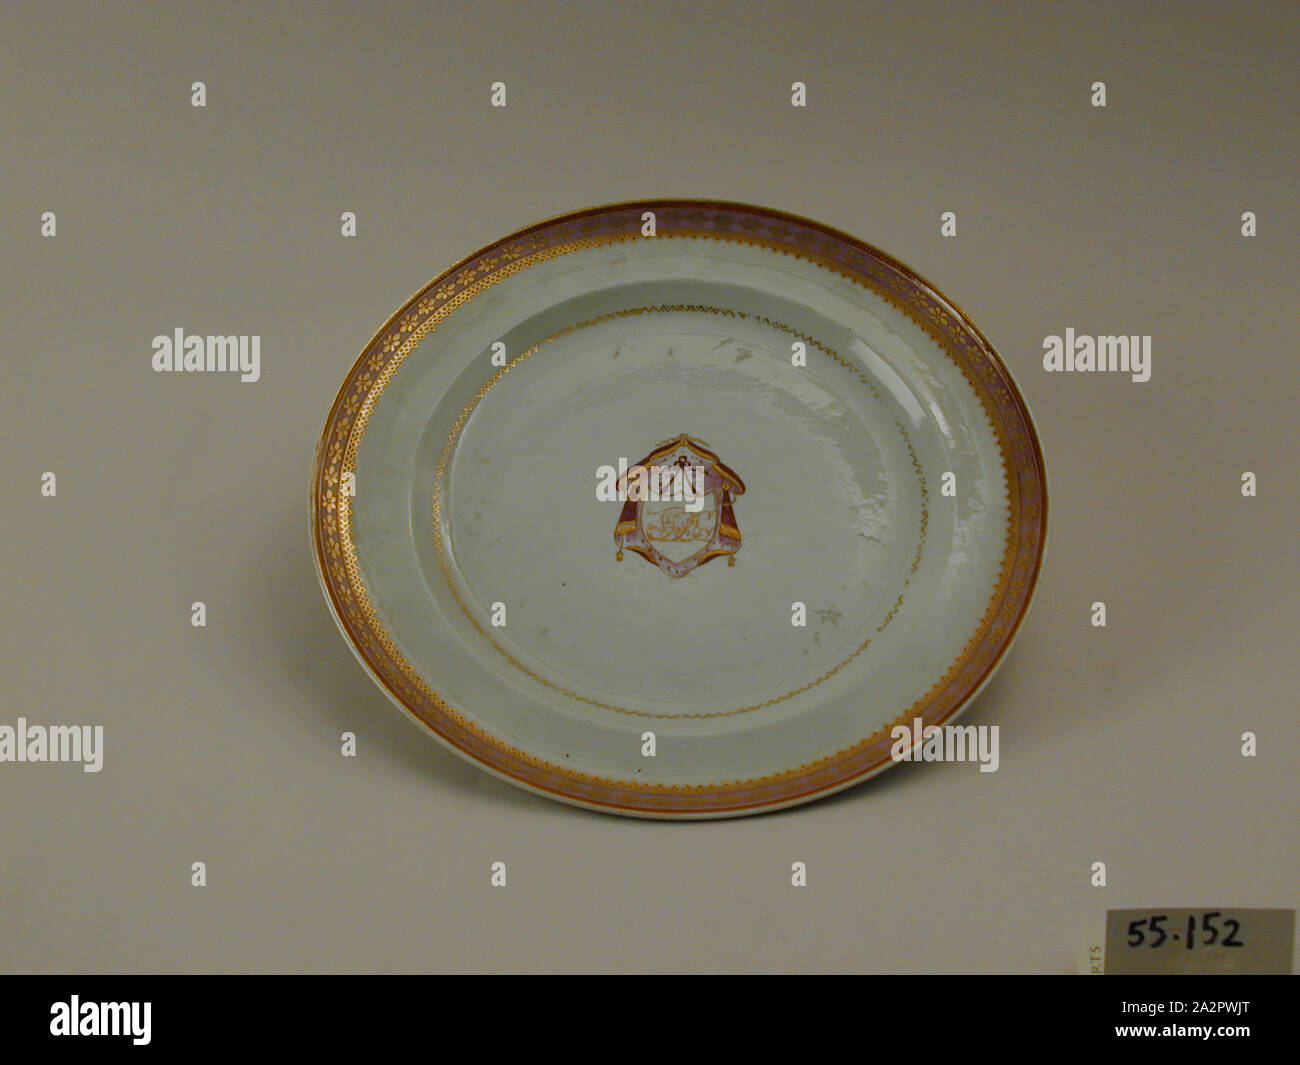 Inconnu (Chinois), la plaque, fin du xviiie siècle, émaillée porcelaine pâte dure avec émail polychrome et dorure, Hauteur x diamètre : 7/8 x 9 3/4 in. (2,2 x 24,8 cm Banque D'Images